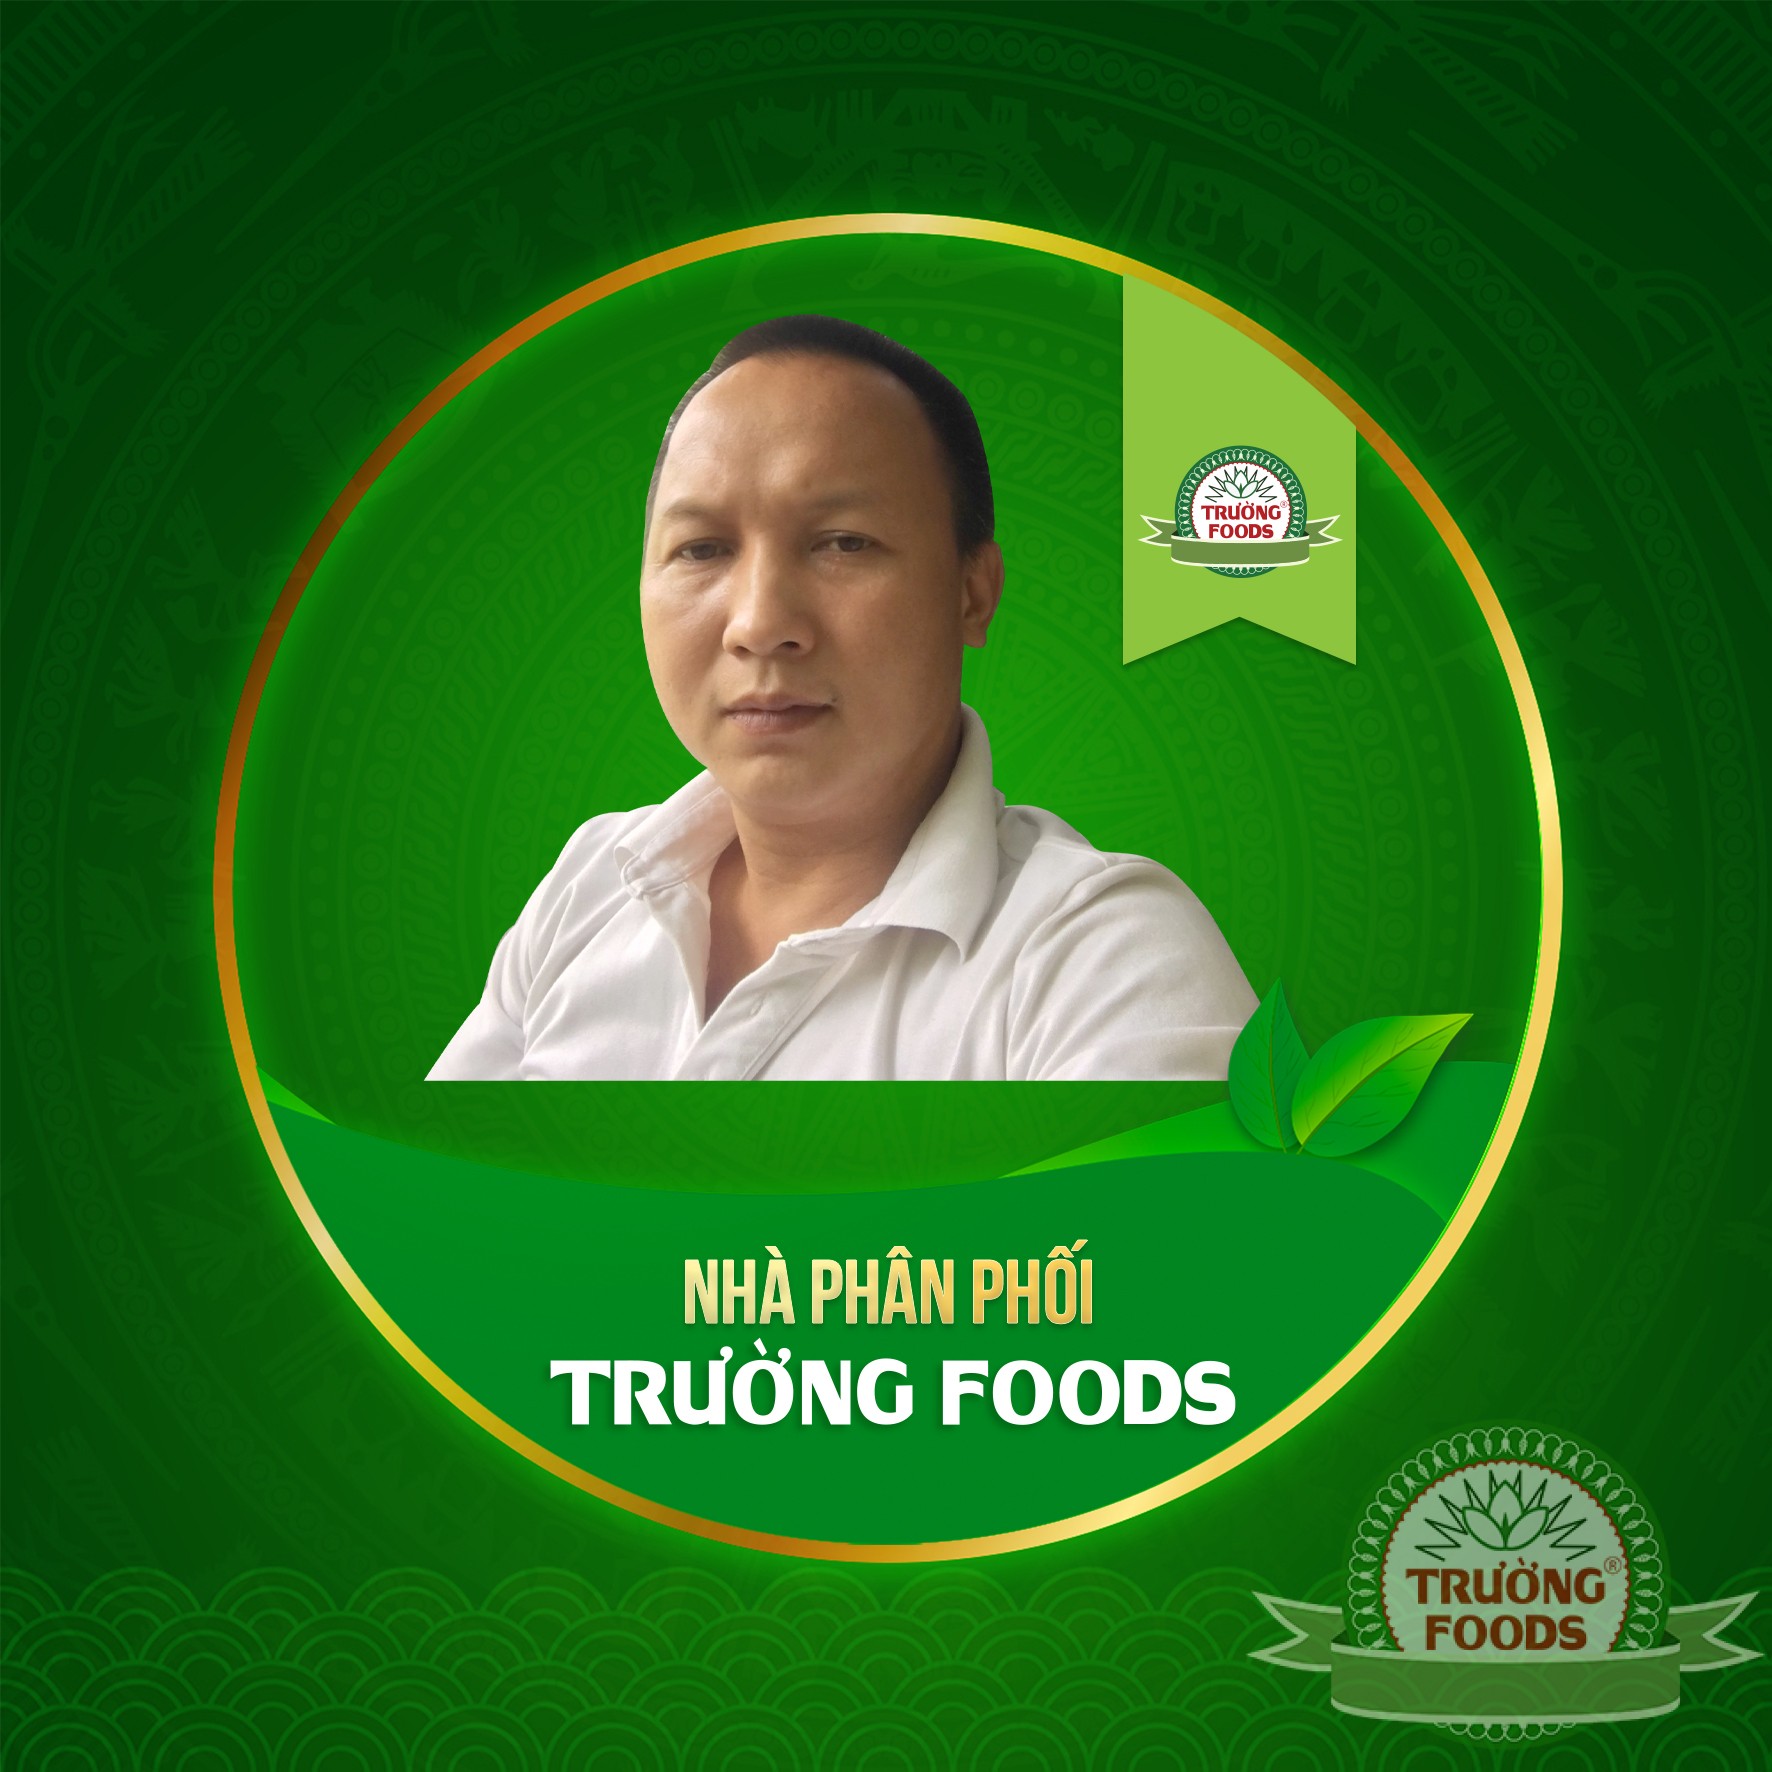 Chào mừng anh Trần Văn Long trở thành NPP của Trường Foods.